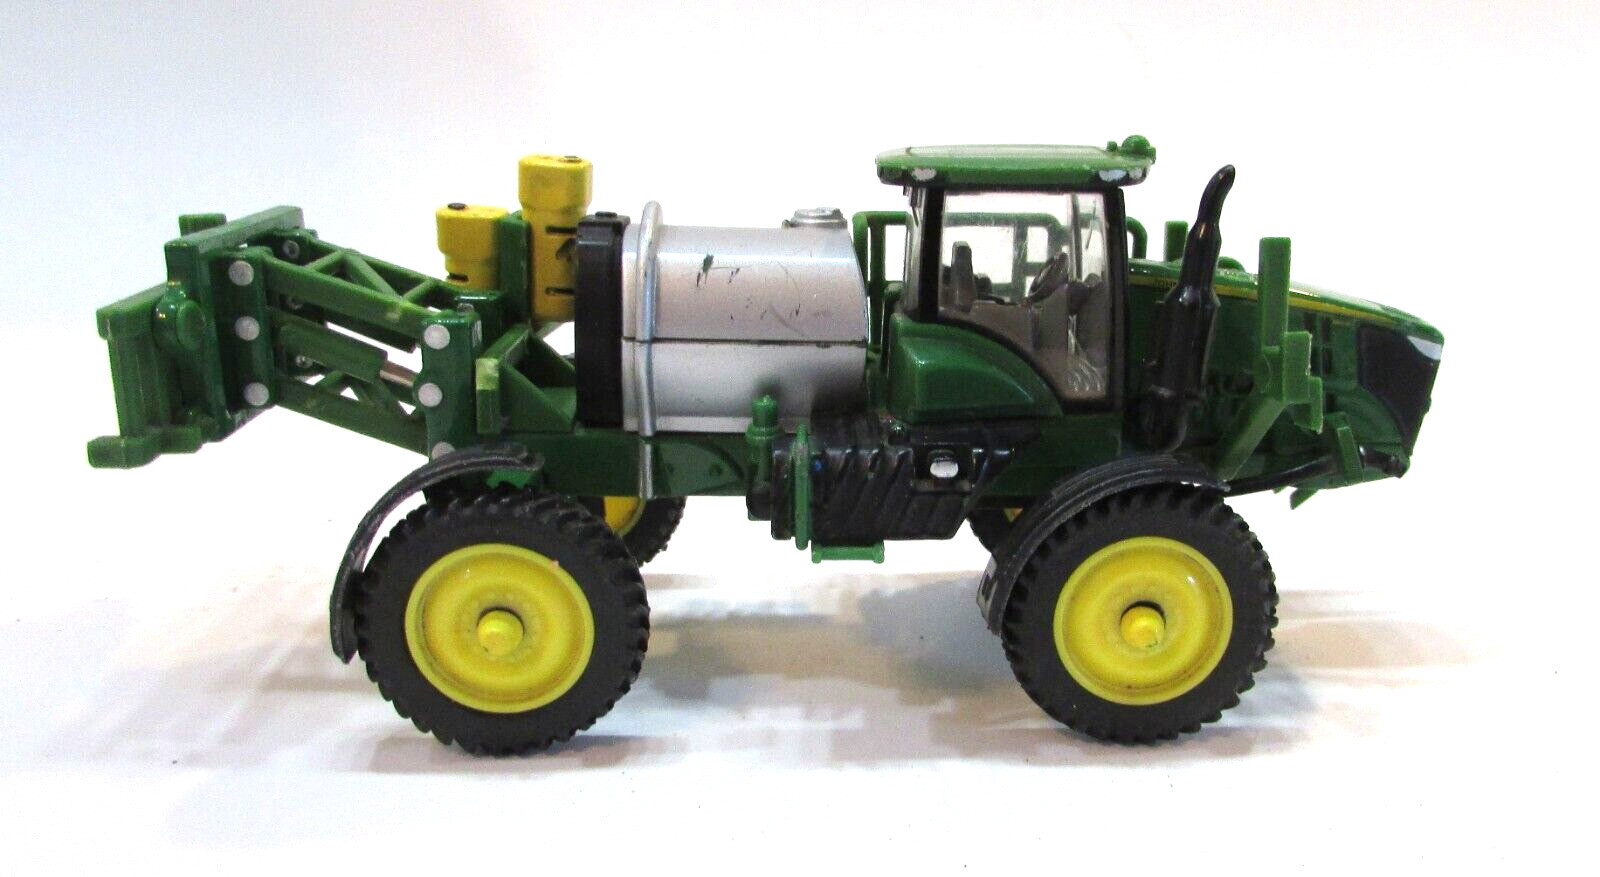 Vintage Ertl 1:64 Diecast Toy John Deere Self Propelled Farm Field Sprayer as is